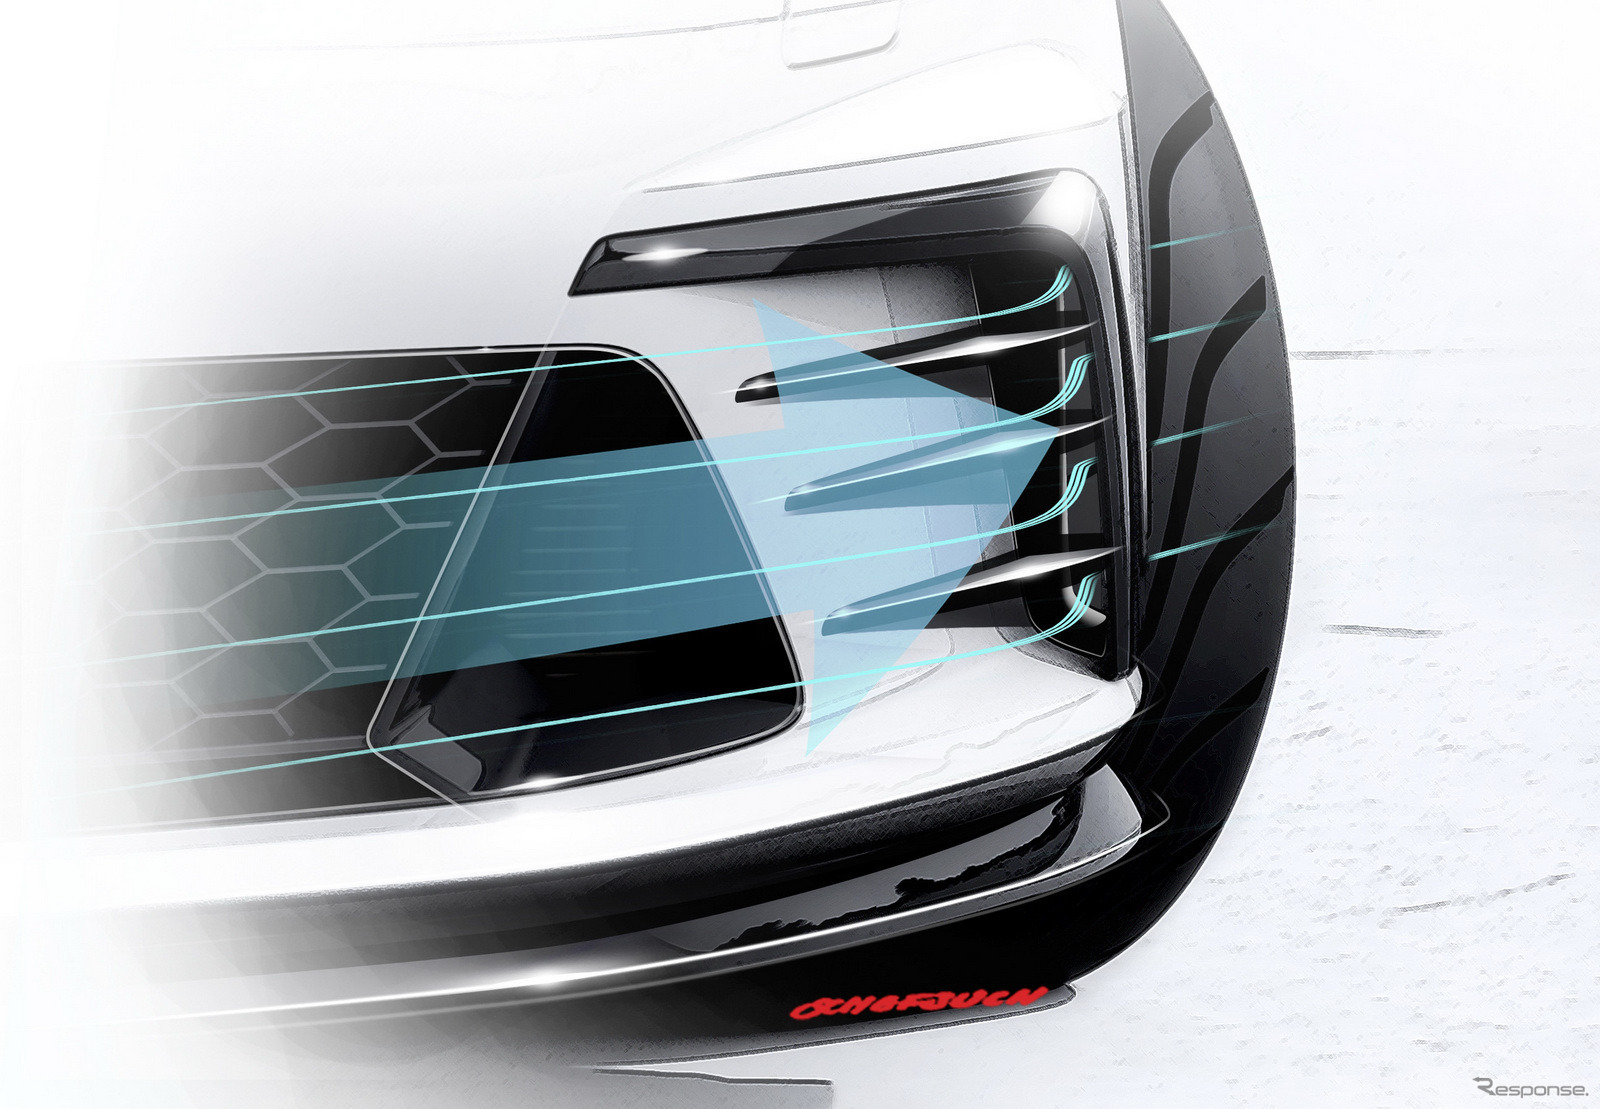 VW ゴルフ GTI に「クラブスポーツ」…265馬力の高性能コンセプト